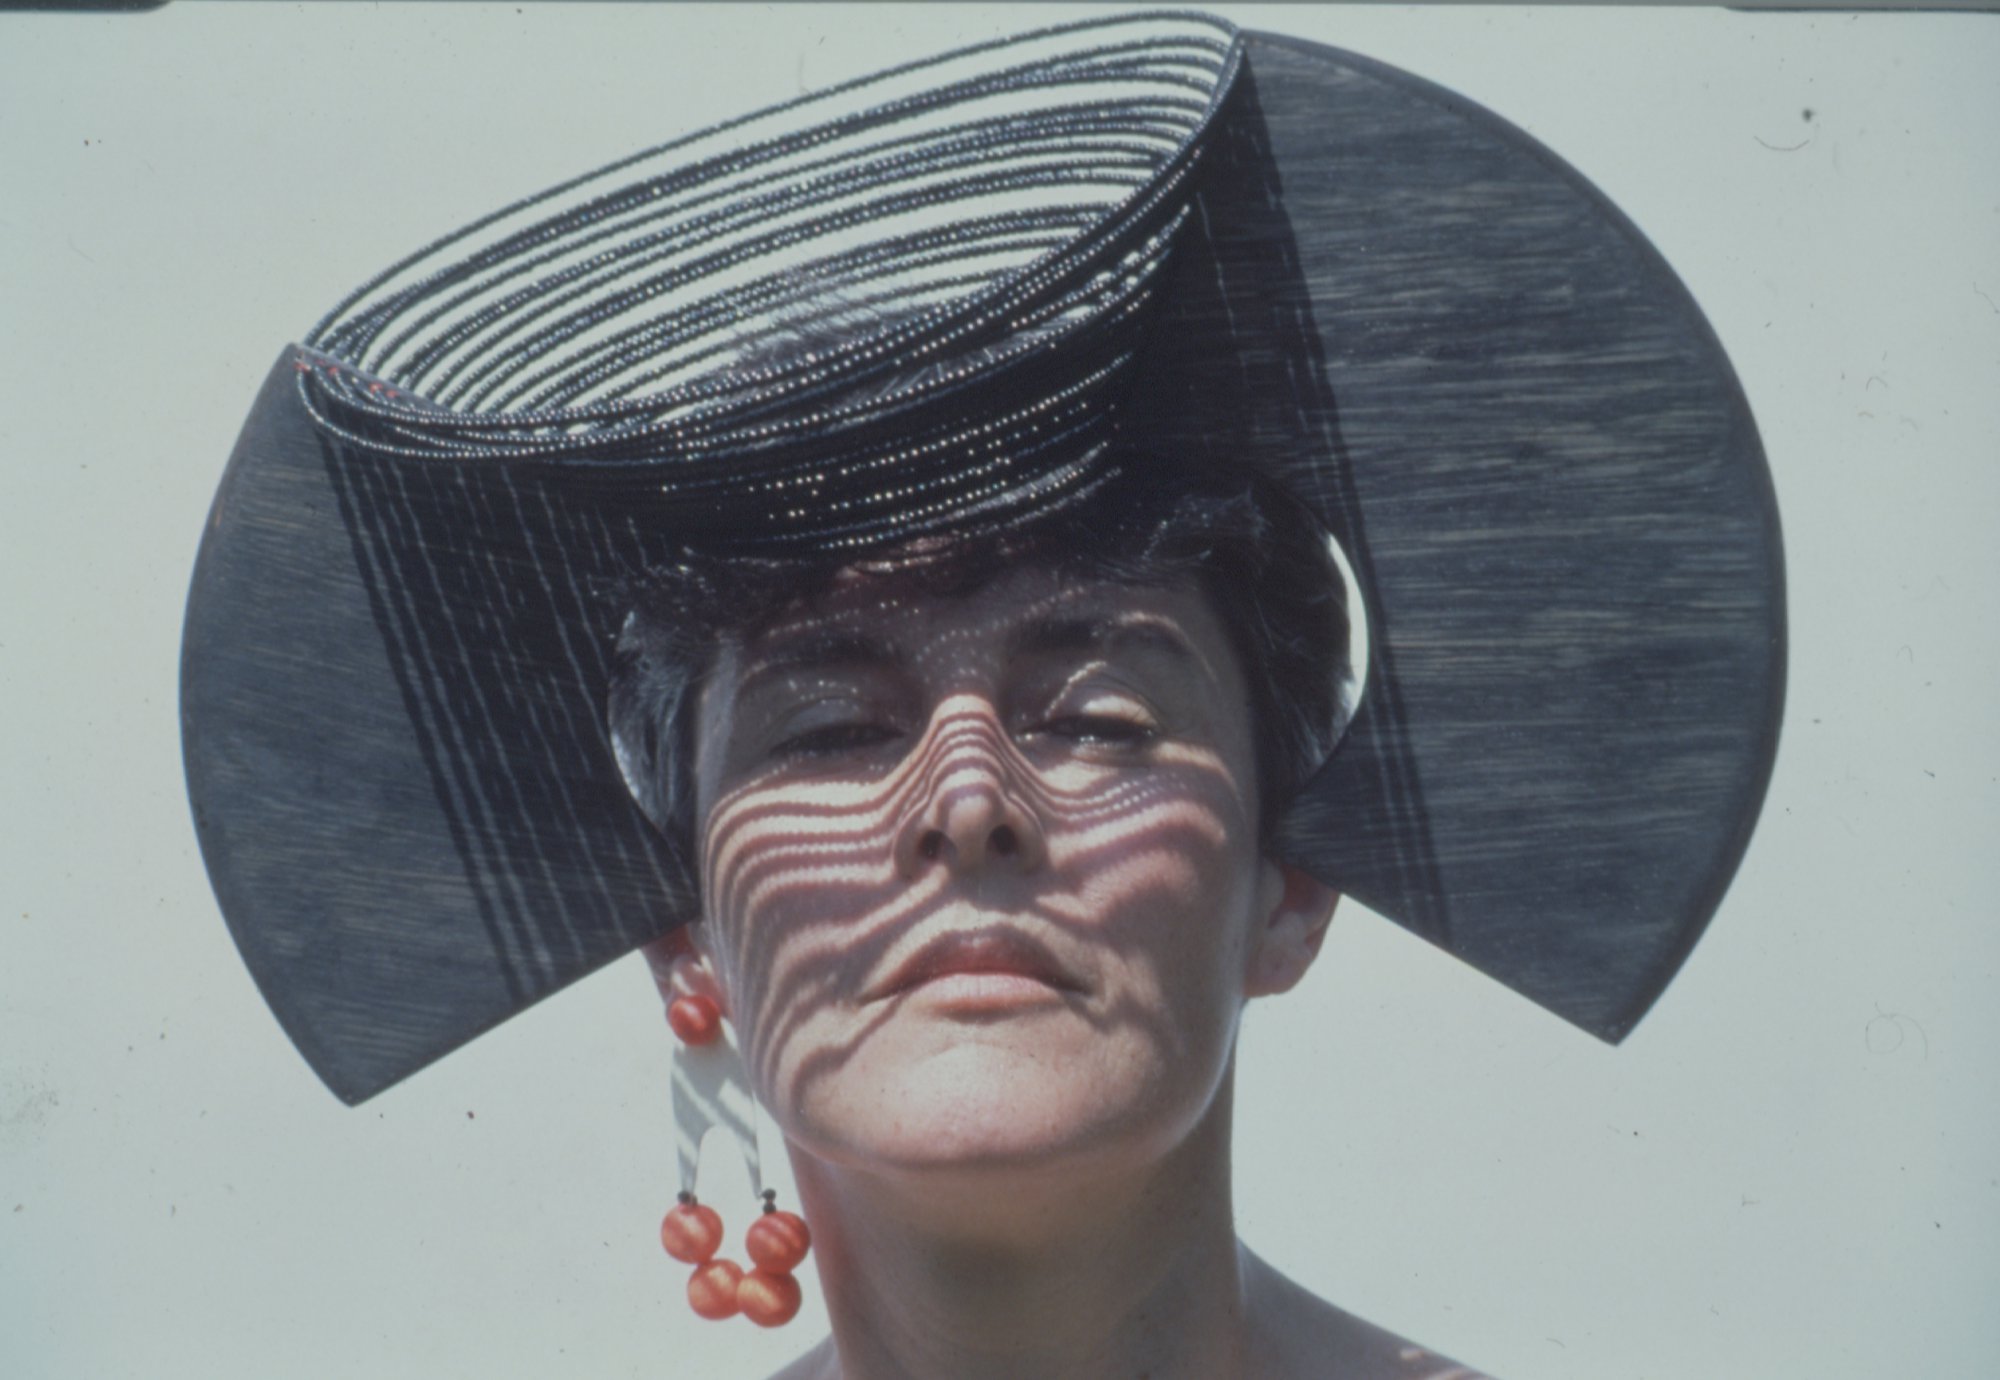 Liliane Lijn, Horned Head, plywood, piano wire, glass beads, 27 x 70 x 37 cm, 1985